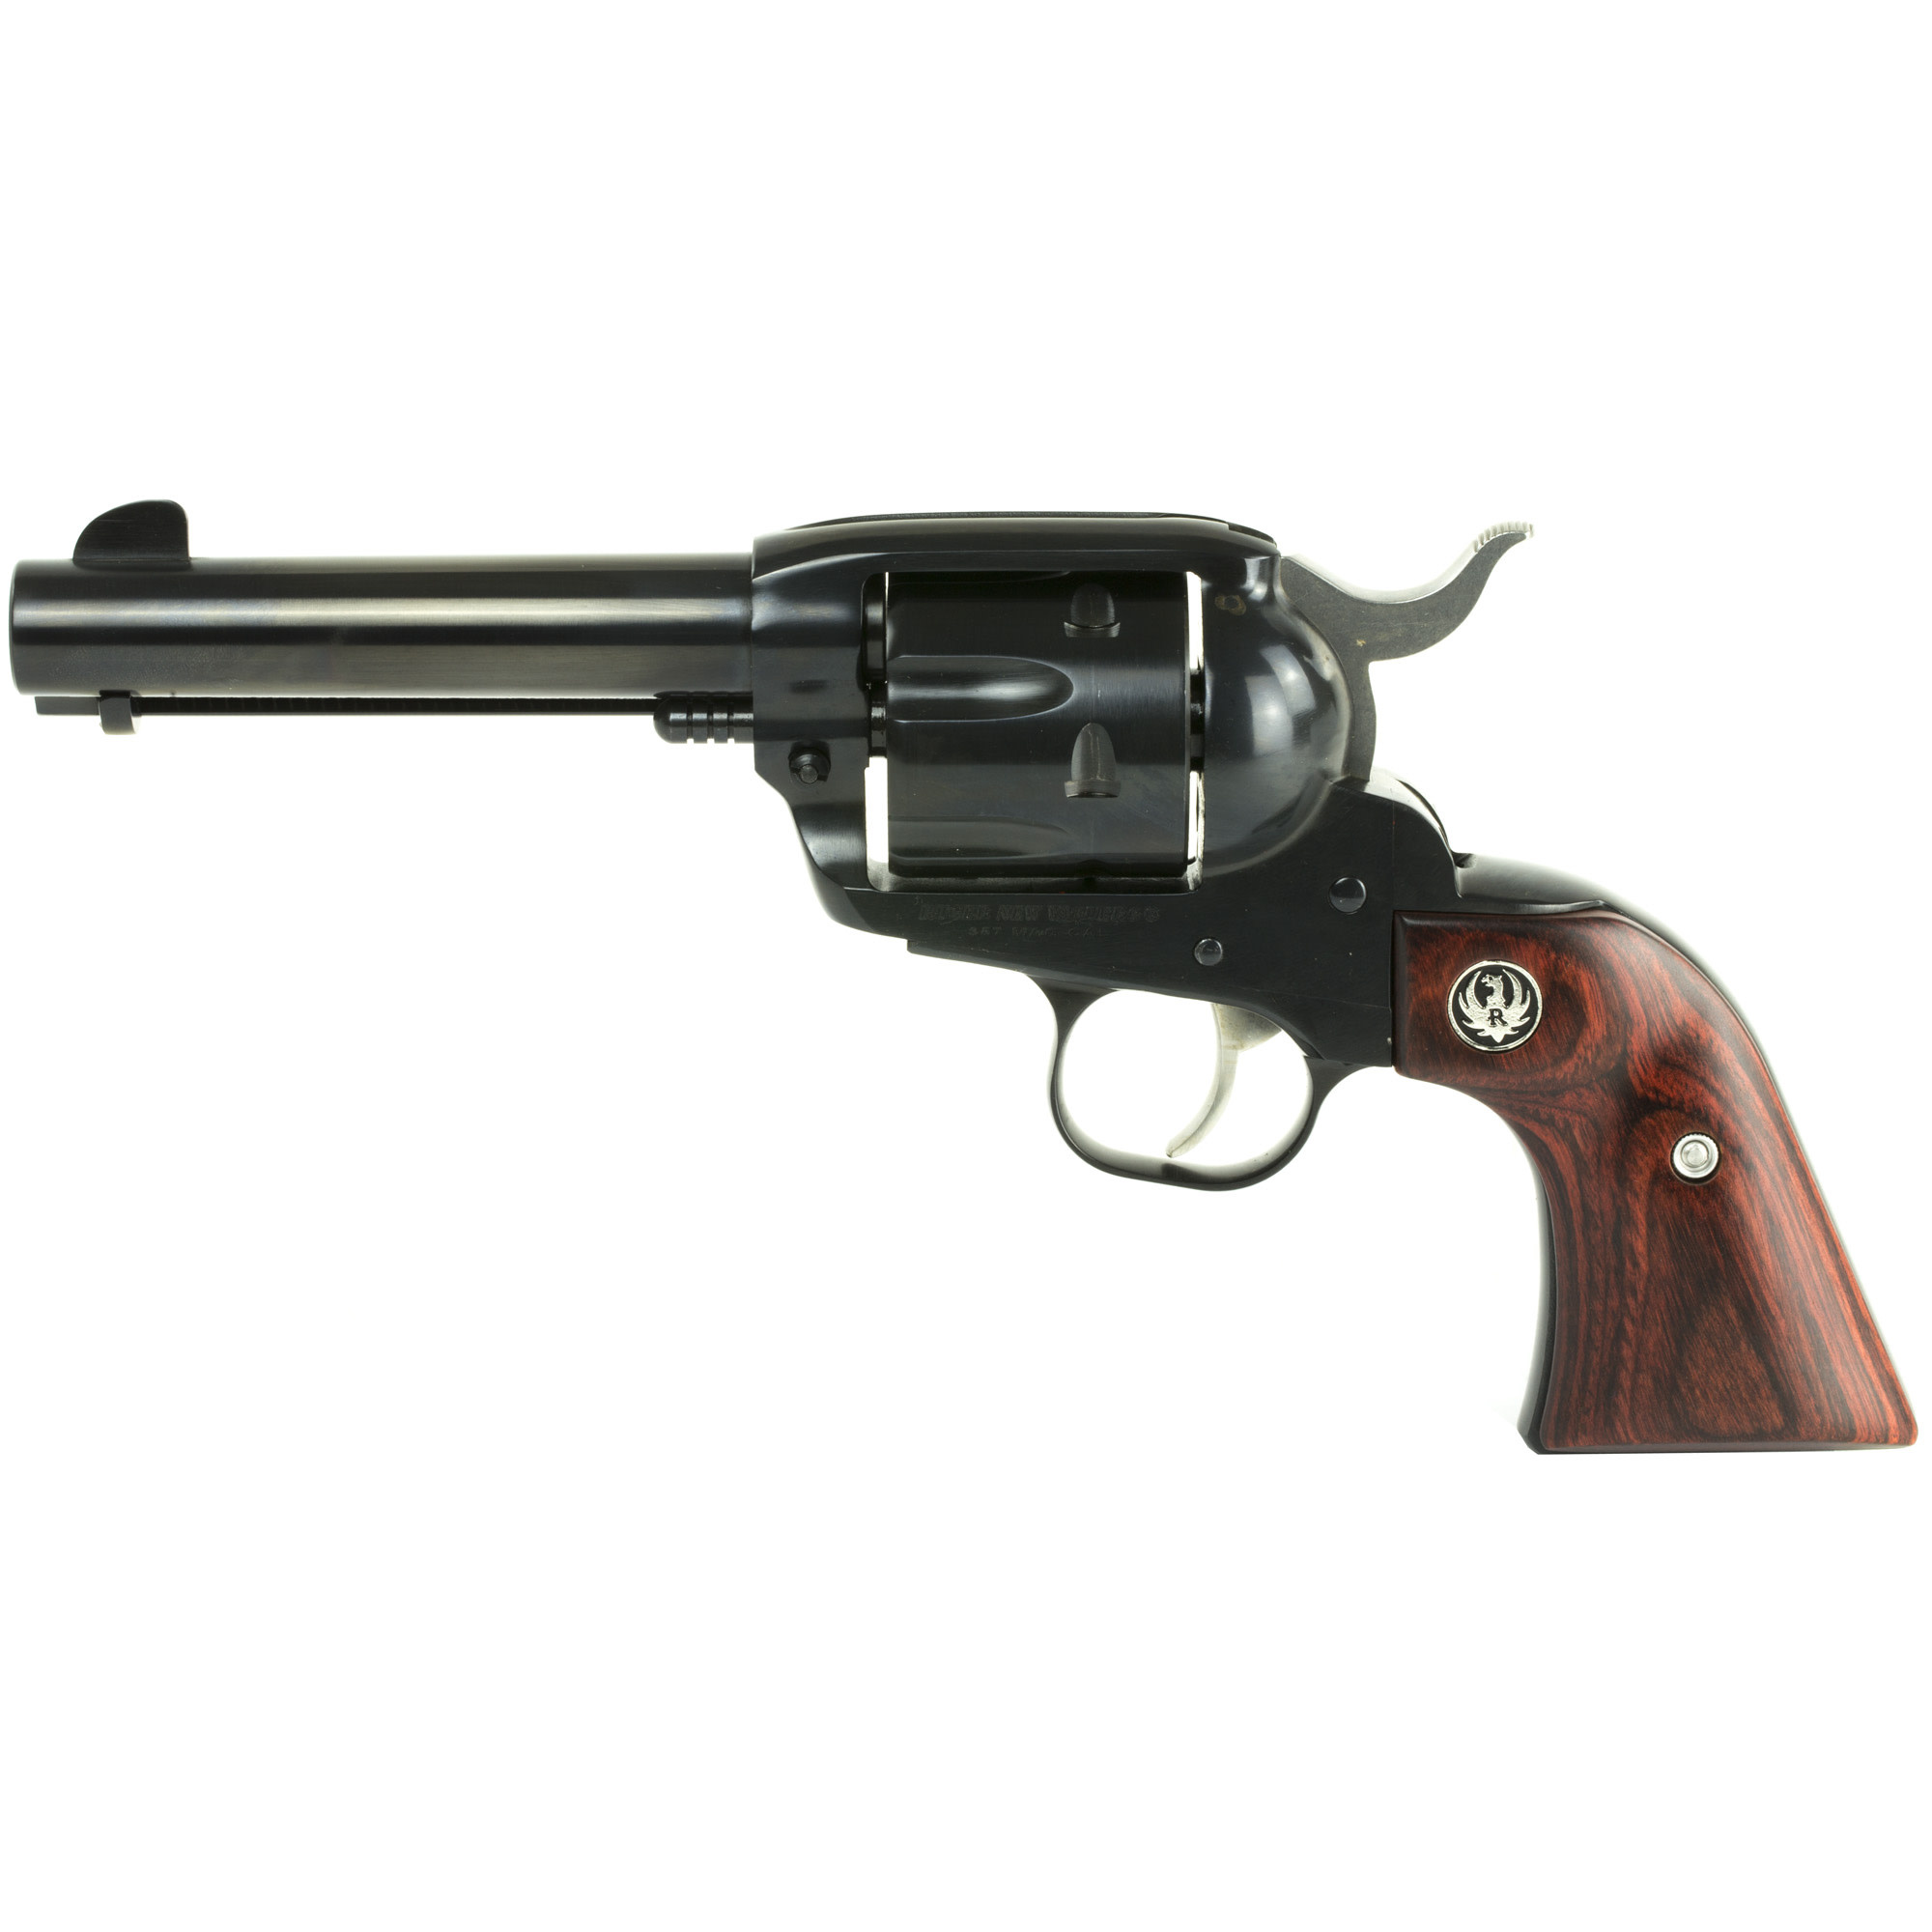 Ruger Vaquero 357MAG 4.6" 6 RND Revolver